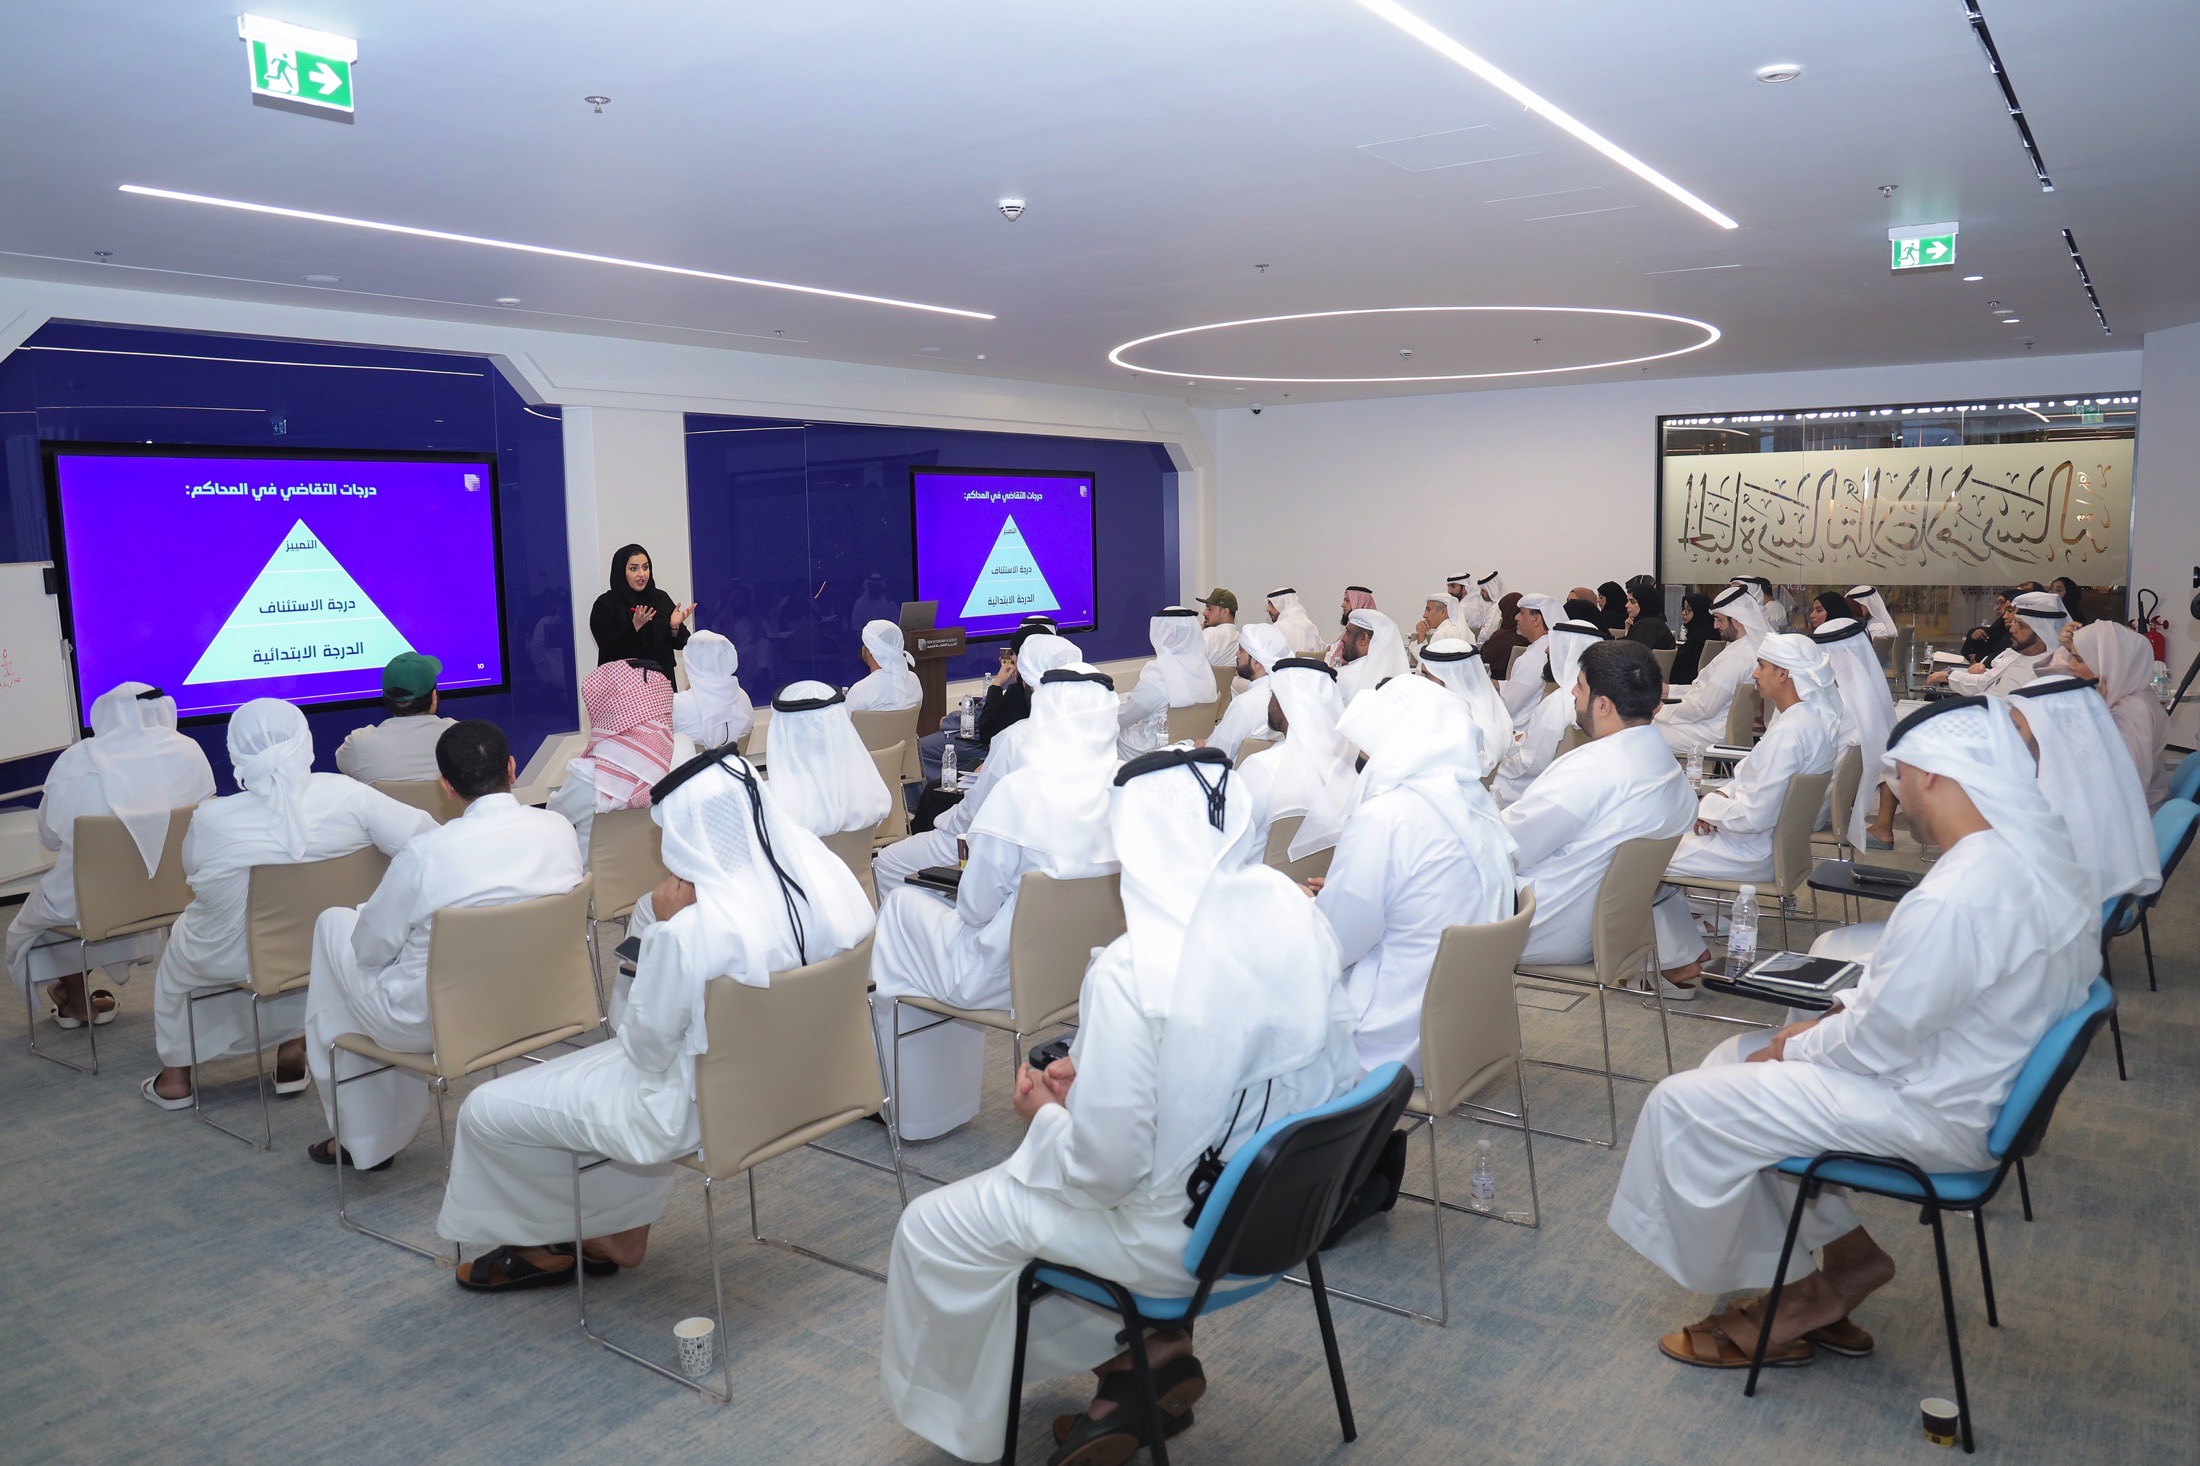 برنامج دبي للوسيط العقاري يستقطب أكثر من 1000 مواطن و25 شراكة استراتيجية مع القطاع الخاص 